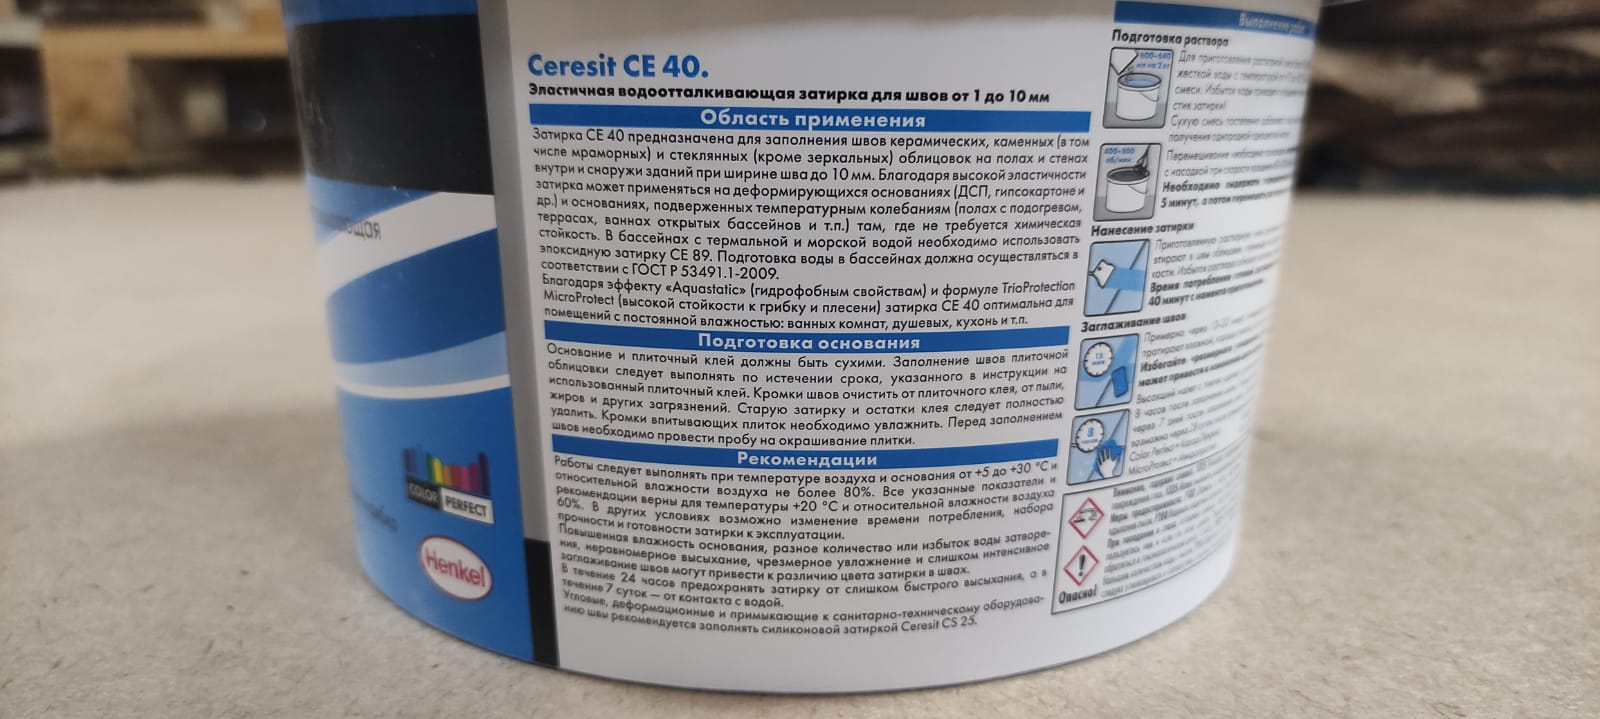 Эластичная водоотталкивающая затирка Ceresit CE 40 aquastatic 2 кг (цвет: багамы)